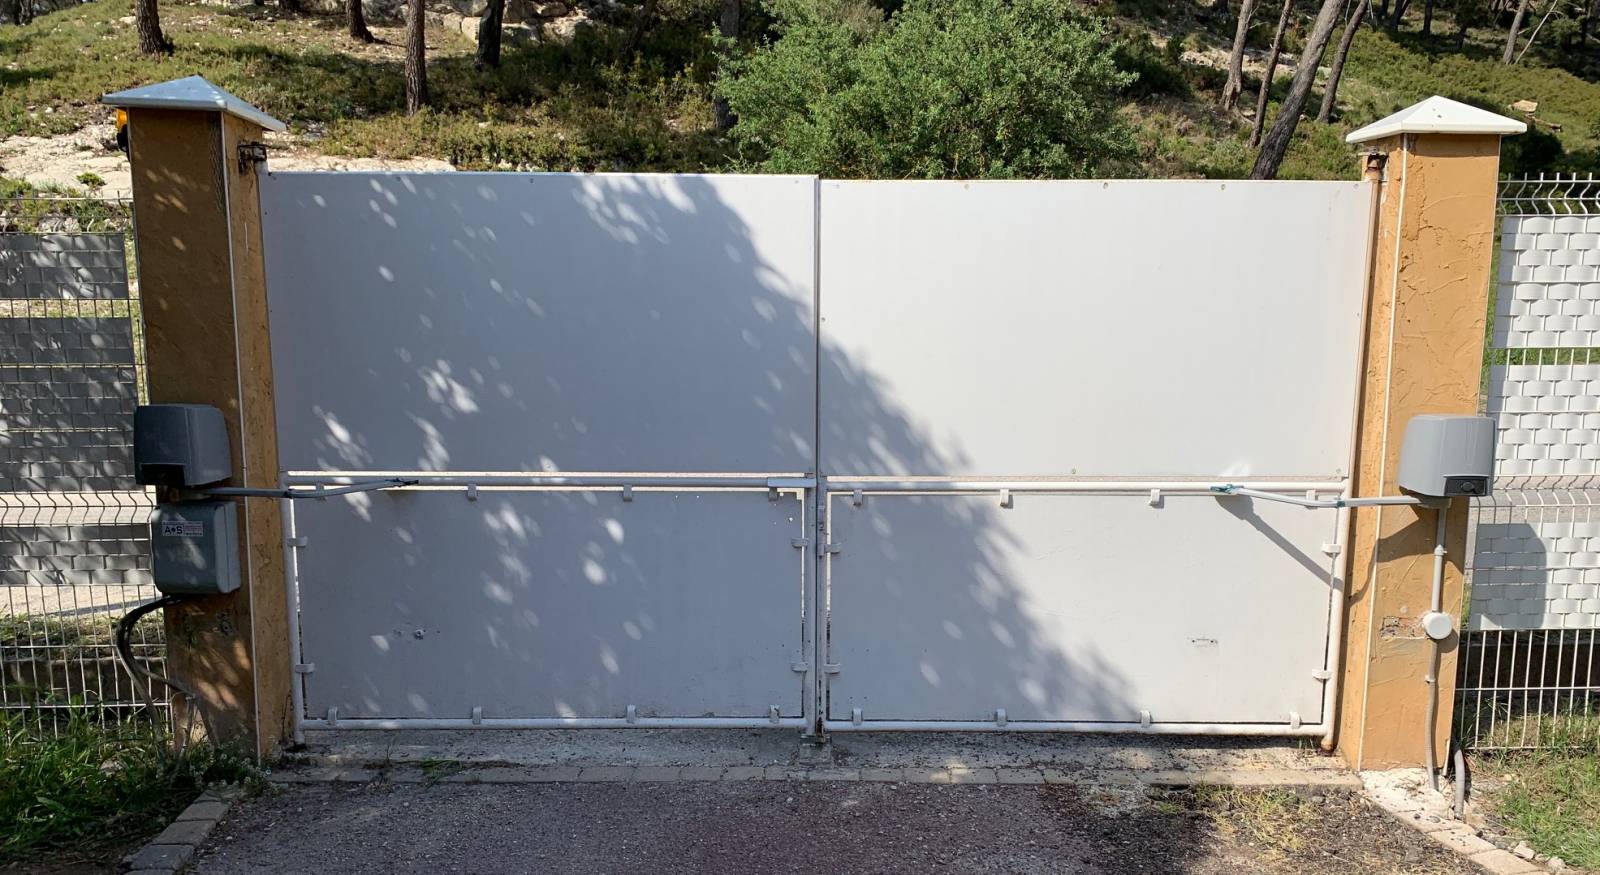 Remise en service d'un portail battant électrique après cambriolage avec installation automatisme came fast FA70230 par Automatisations Services sur Septèmes Vallons près d'Aix et Marseille - Installation et dépannage automatisme